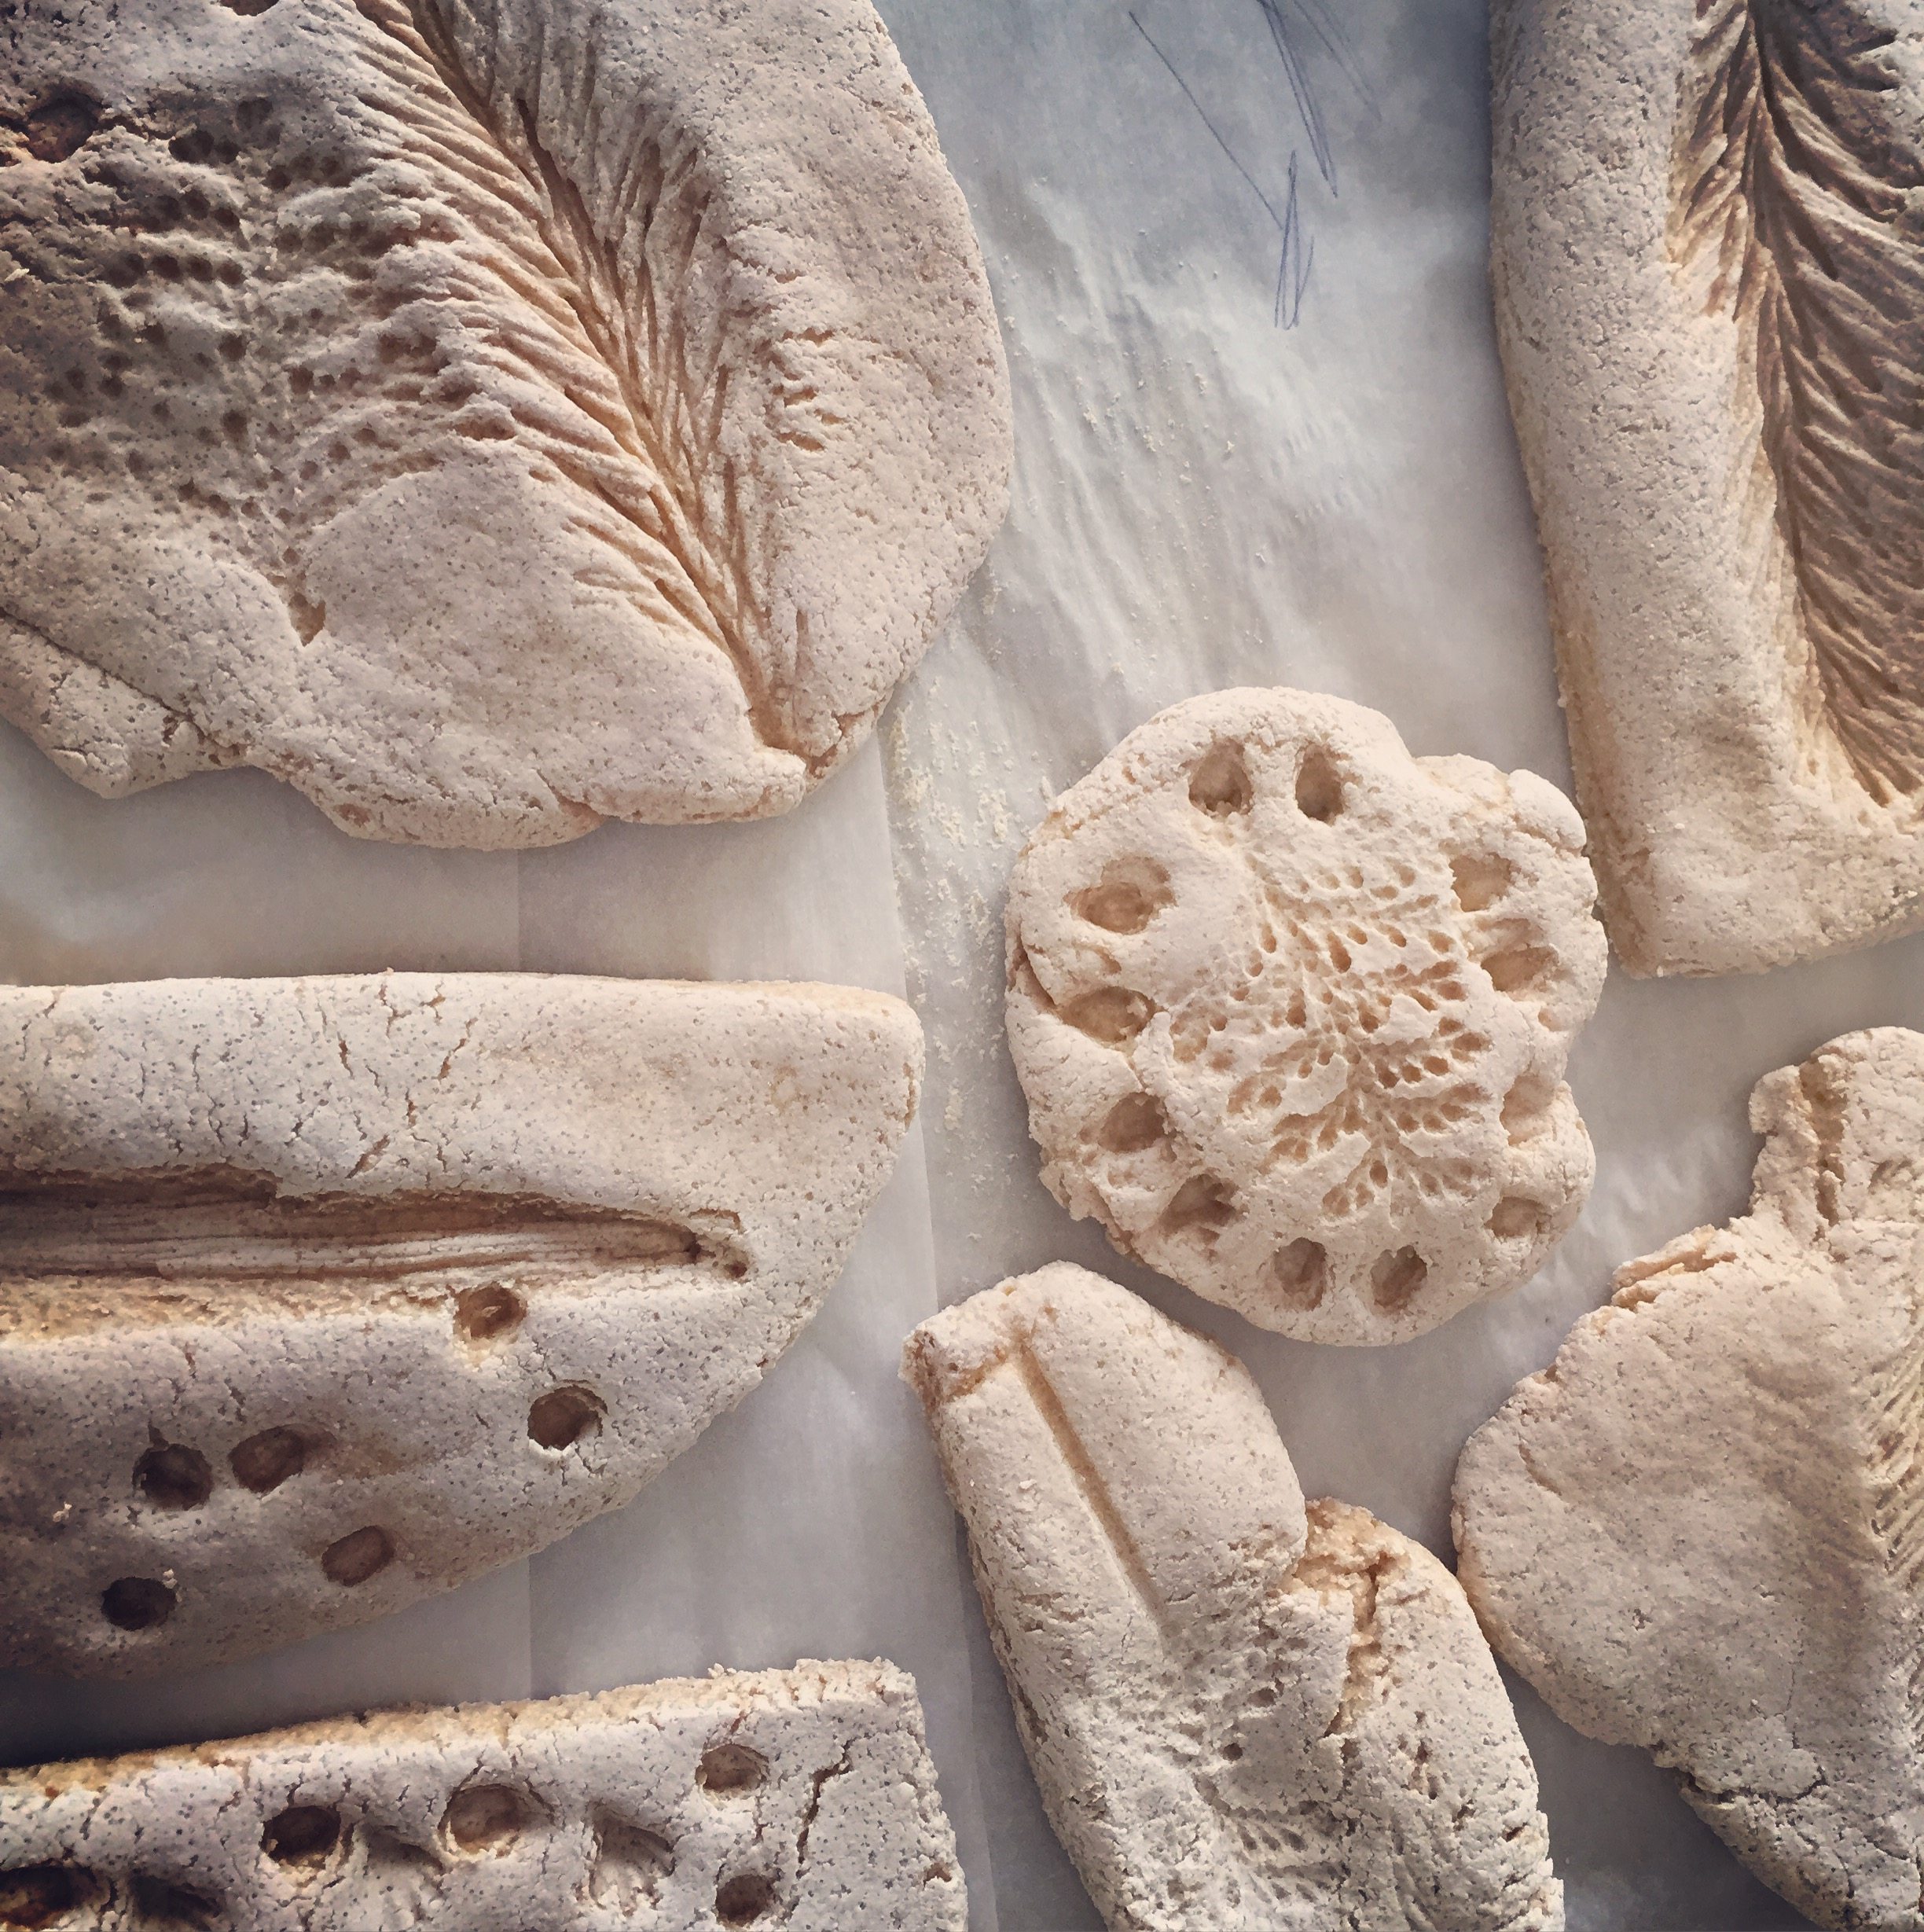 How to Make Salt Dough Fossils